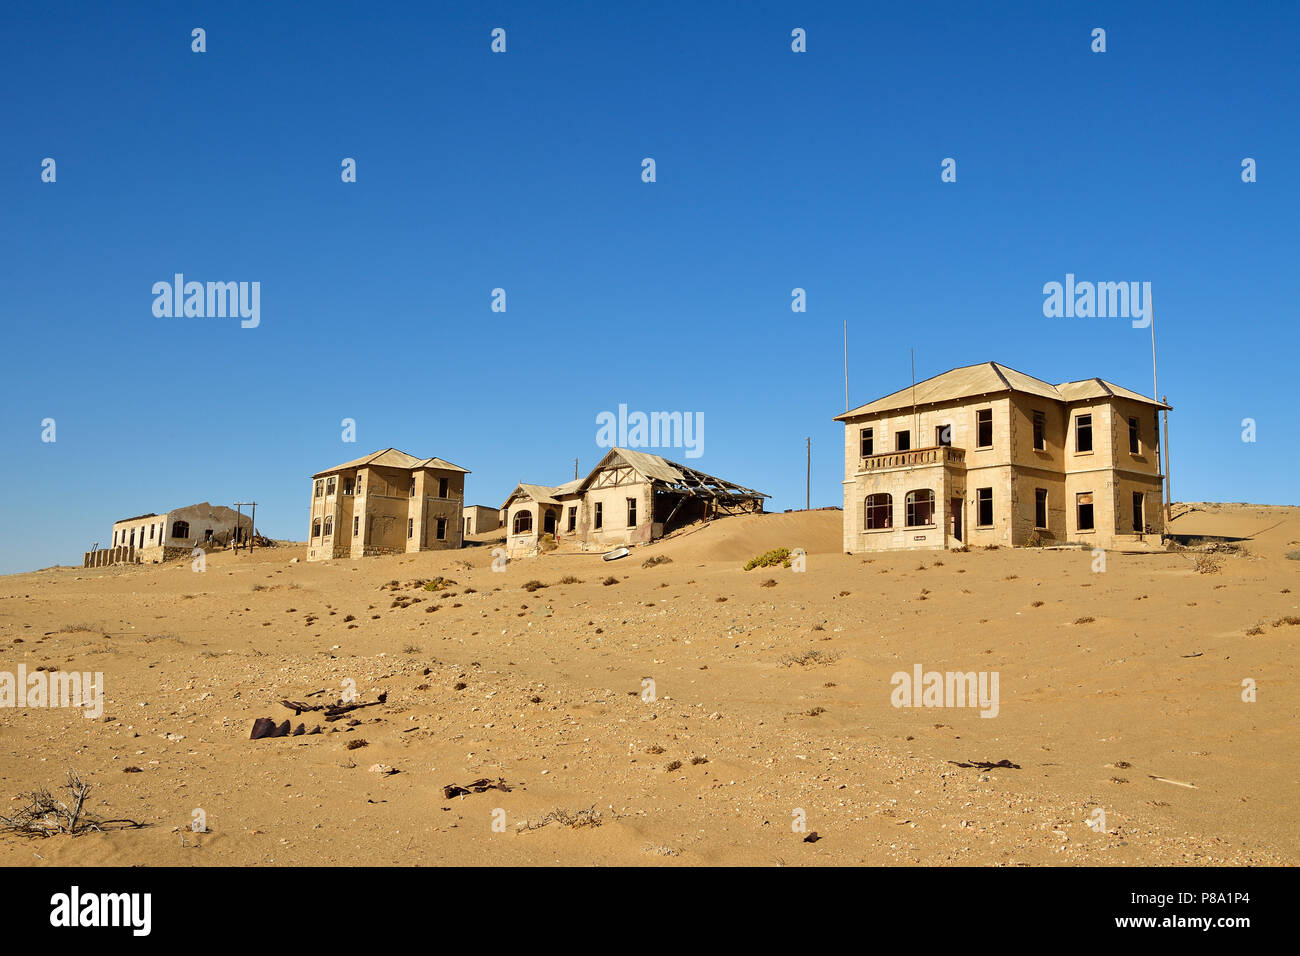 Las casas antiguas de la antigua ciudad de diamante, Ghost Town, Kolmanskop, Lüderitz, Namibia Foto de stock